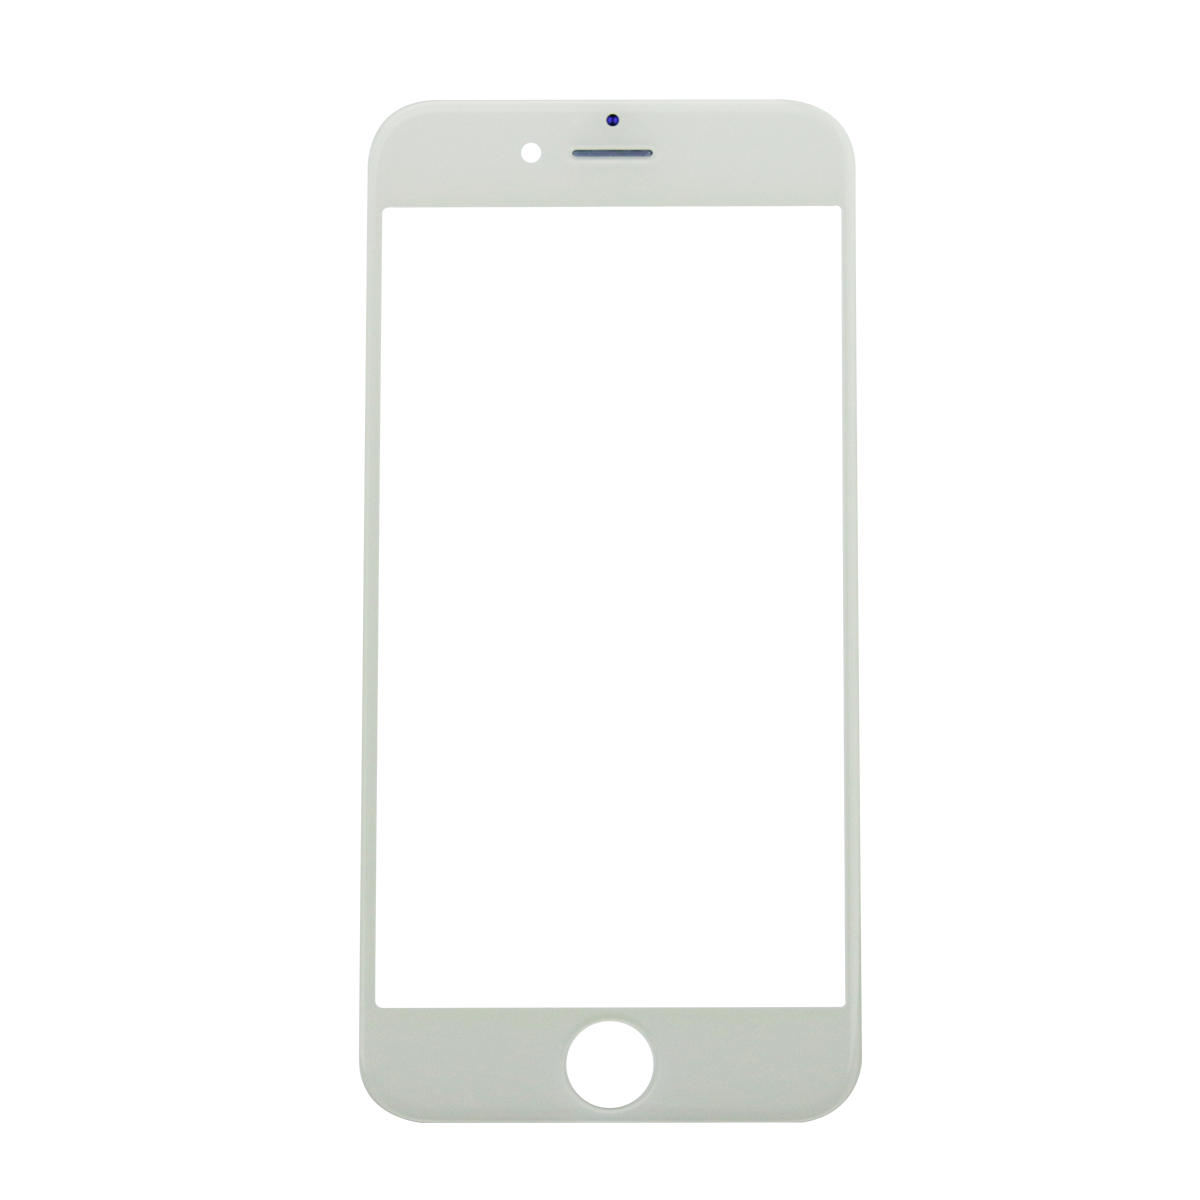 IPhone PNG изображение с прозрачным фоном